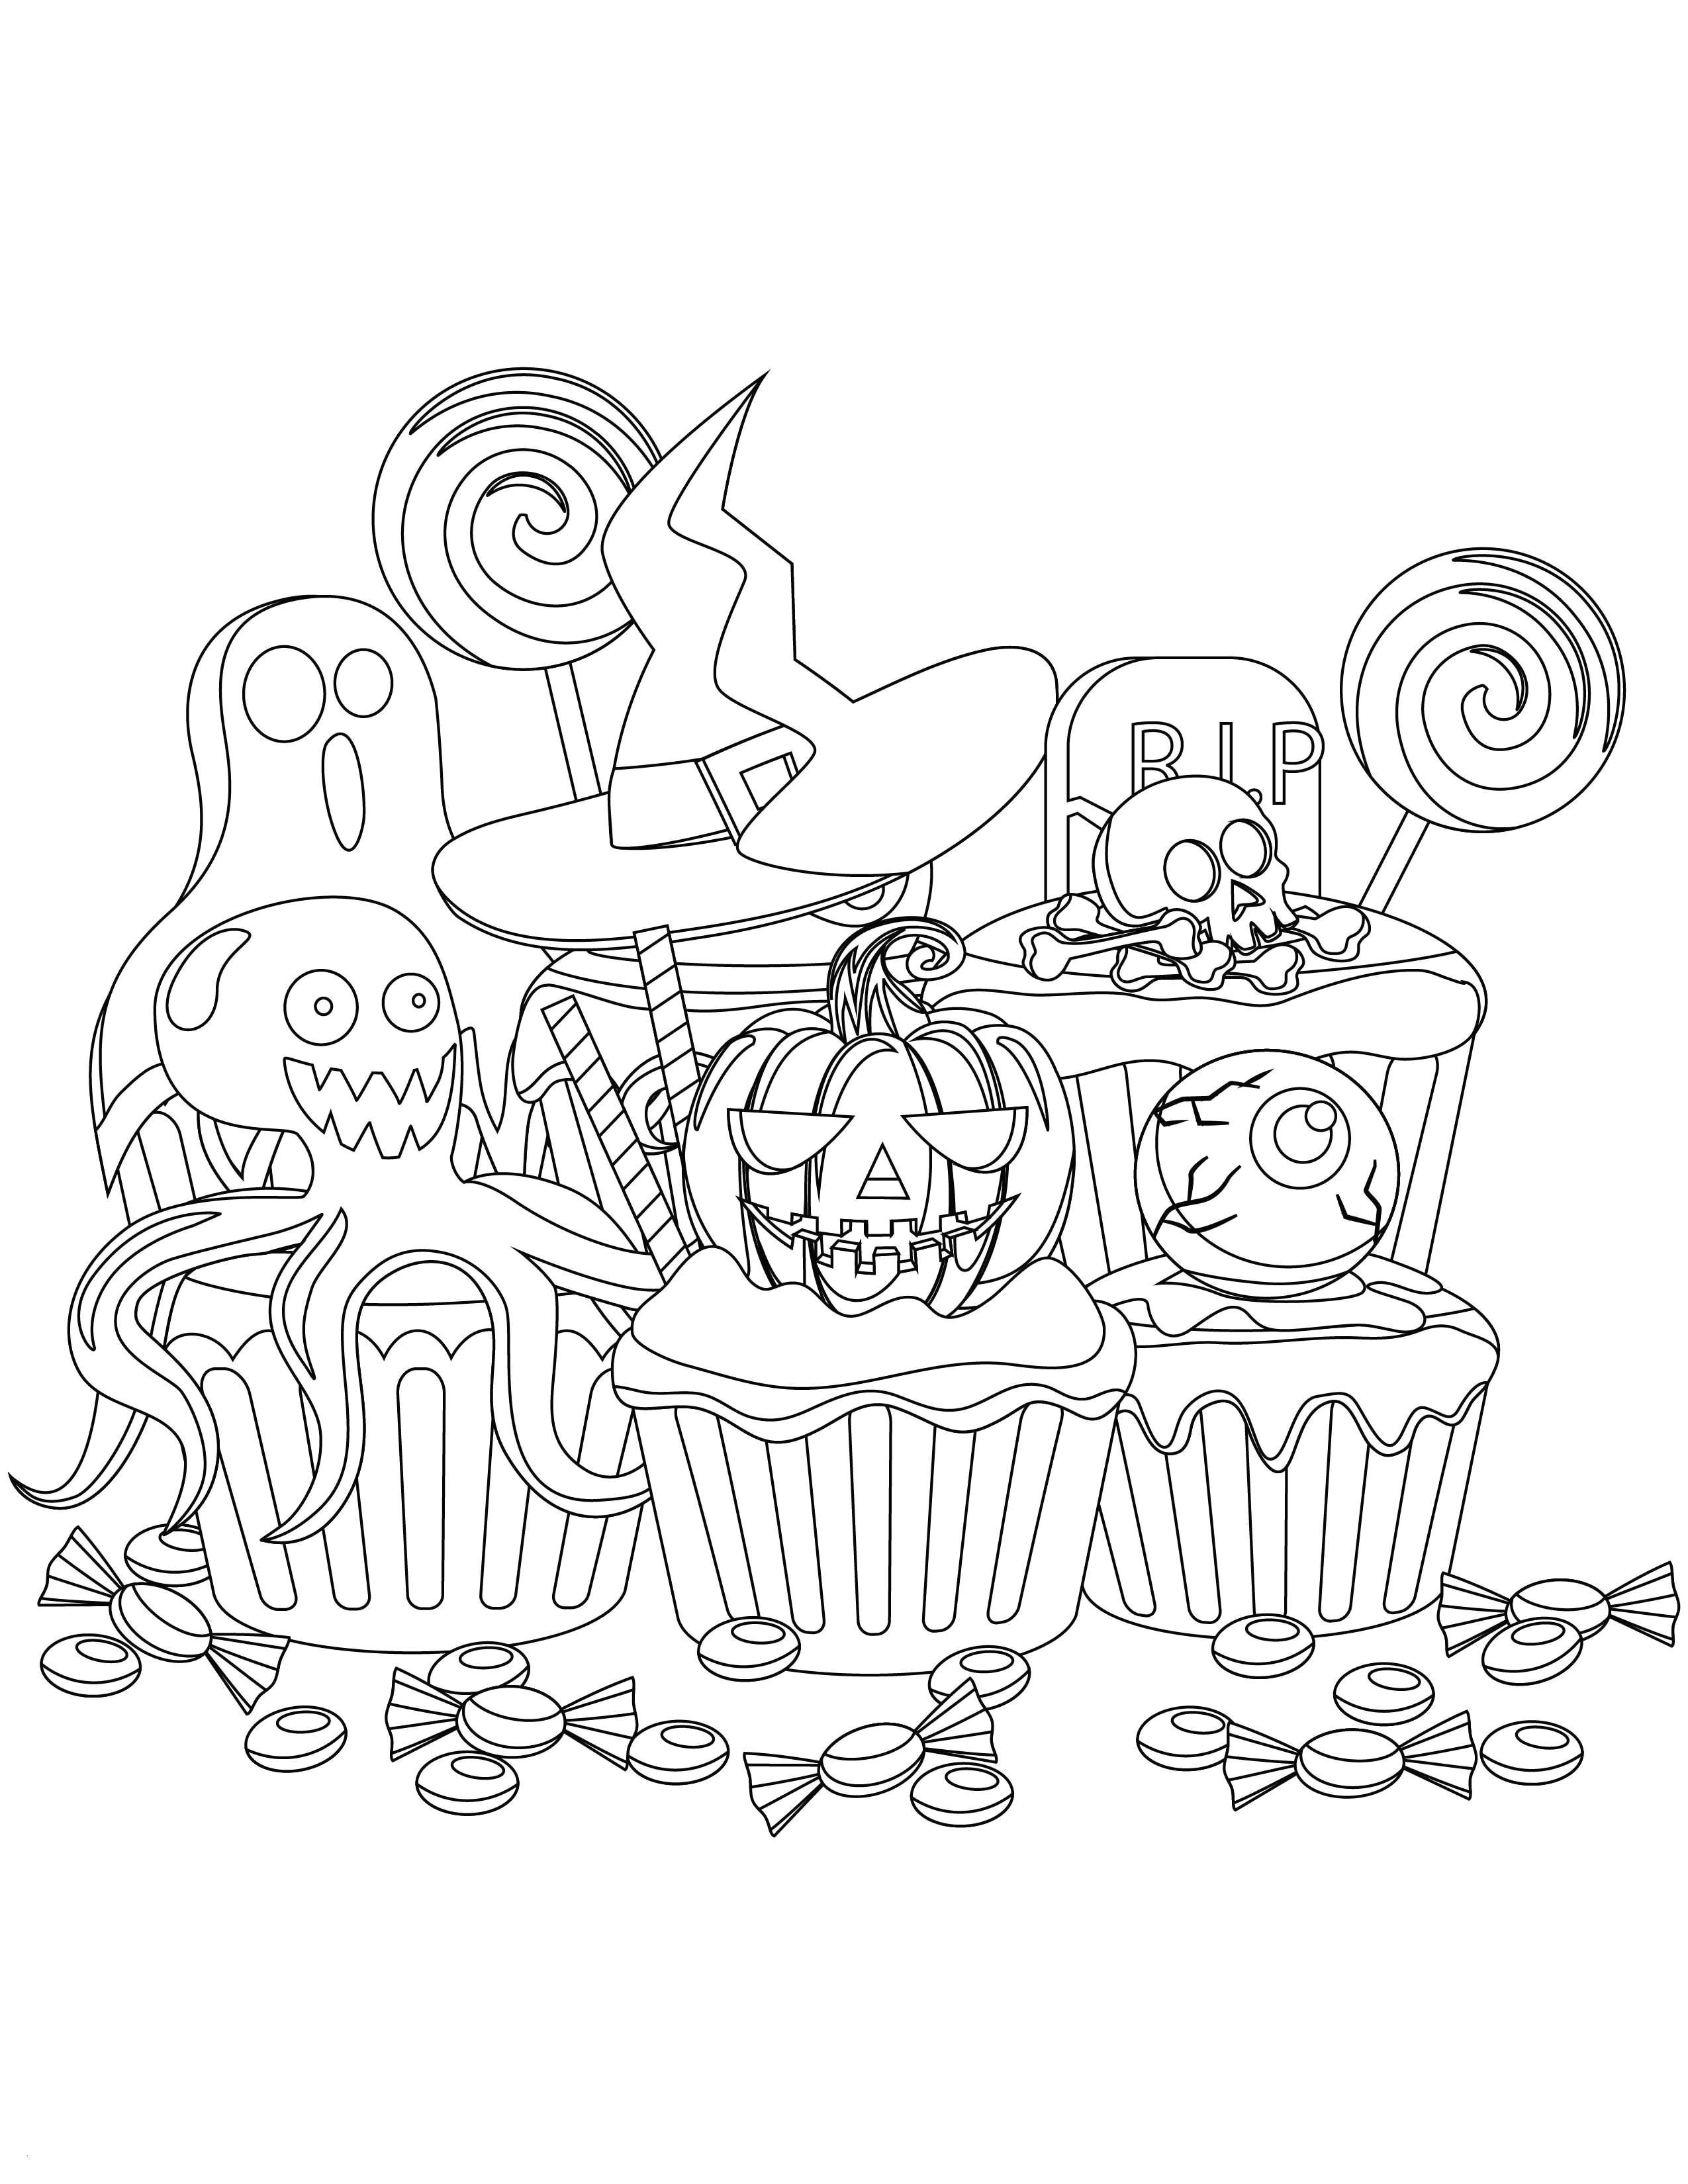 Drawing Cookie Tumblr Einzigartig 20 Ausmalbilder Zum Ausdrucken Laternenfest